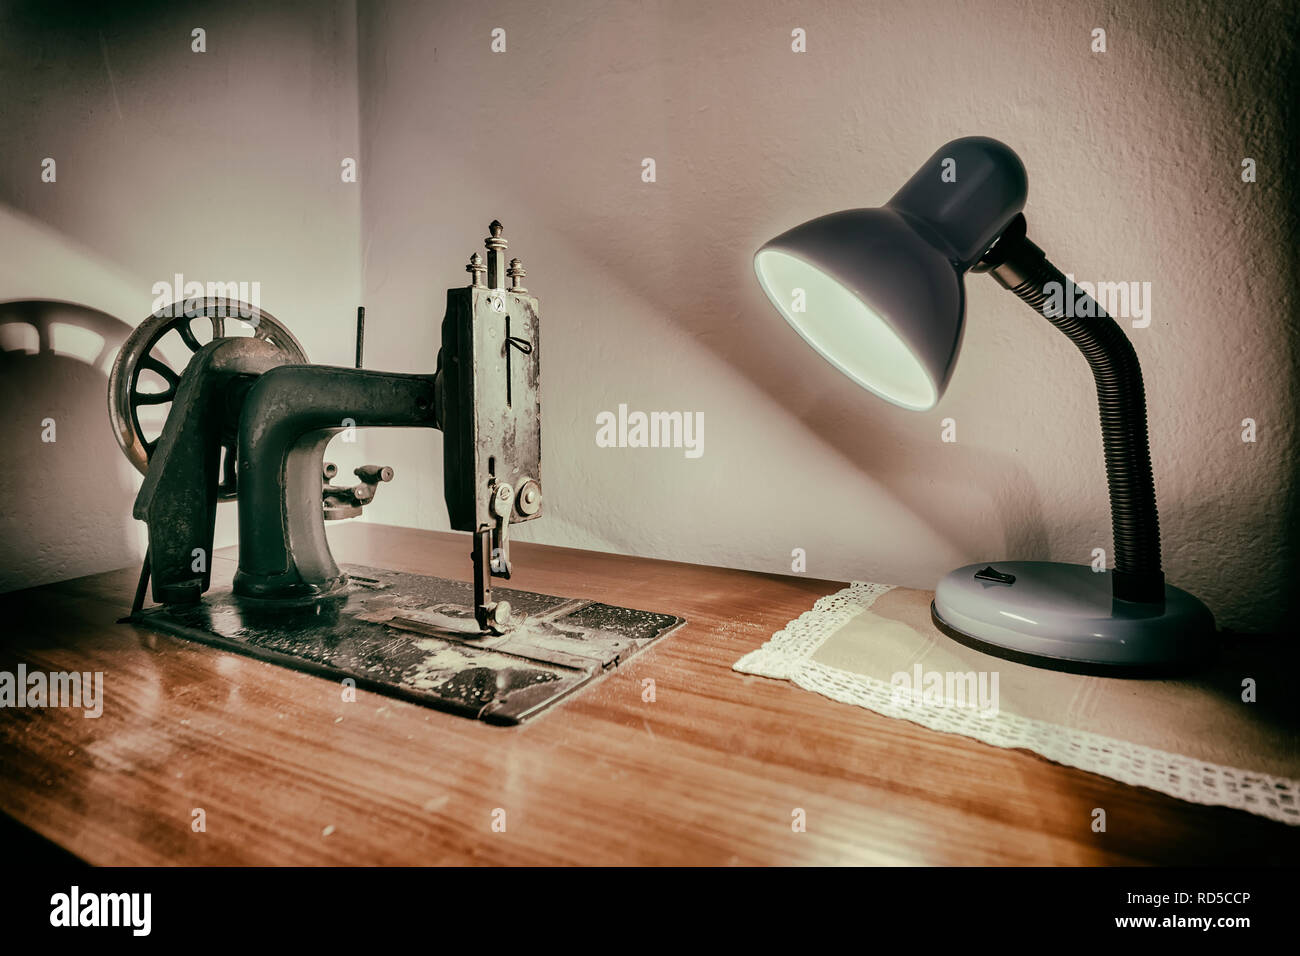 Lampe und alte Nähmaschine auf Arbeitstisch Stockfoto